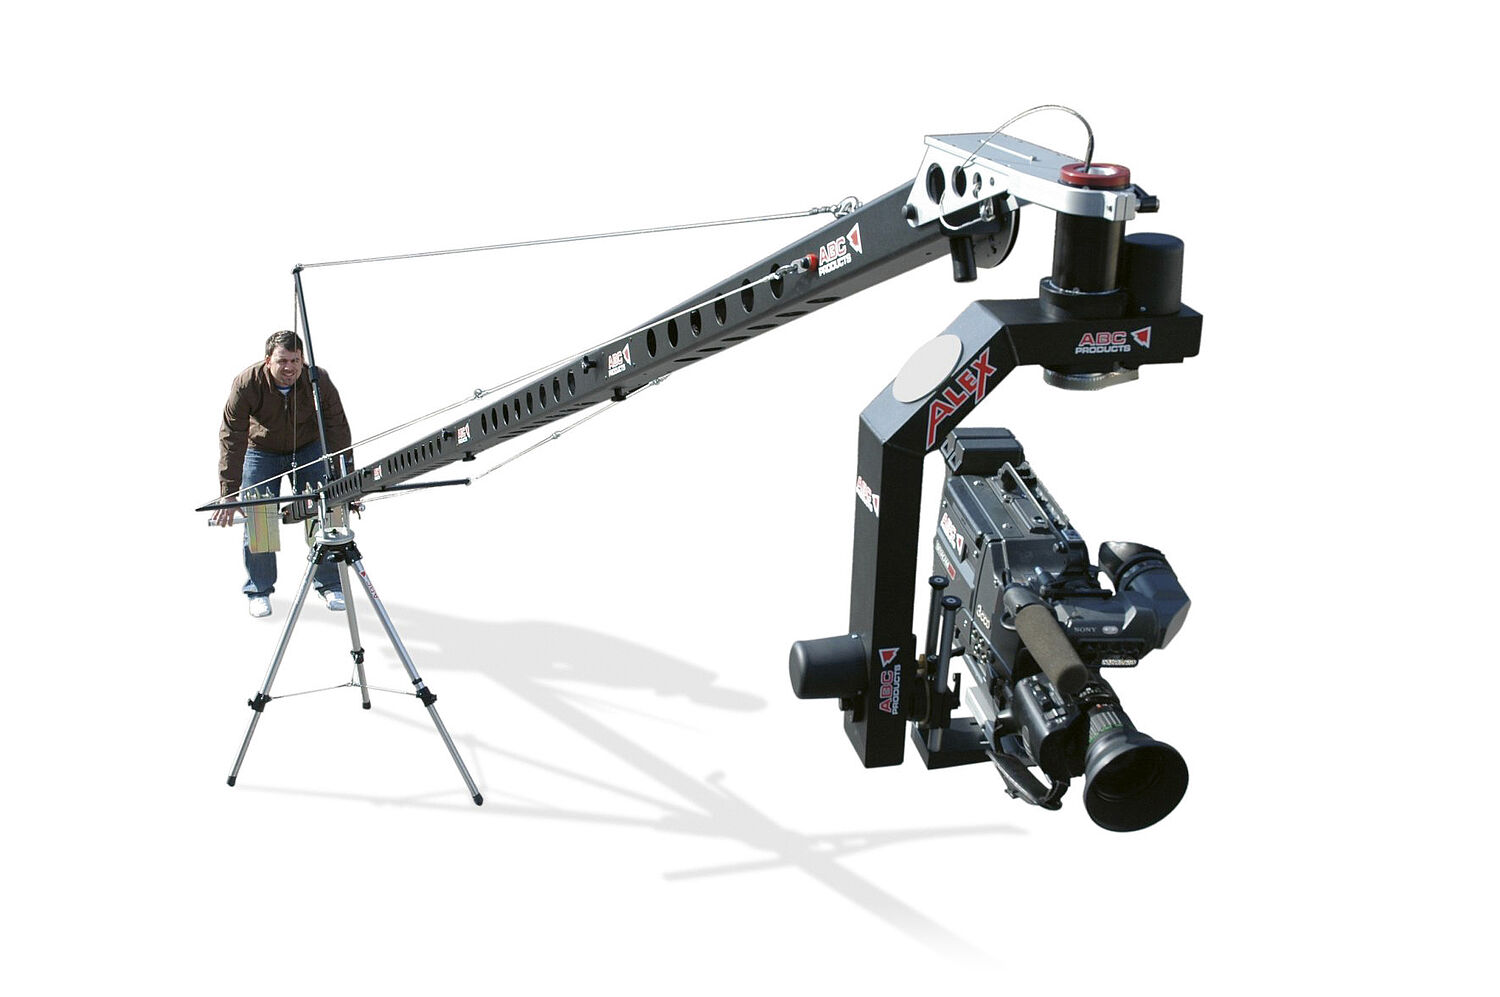 Controlli di posizione in gru di costruzione leggera per riprese cinematografiche e televisive